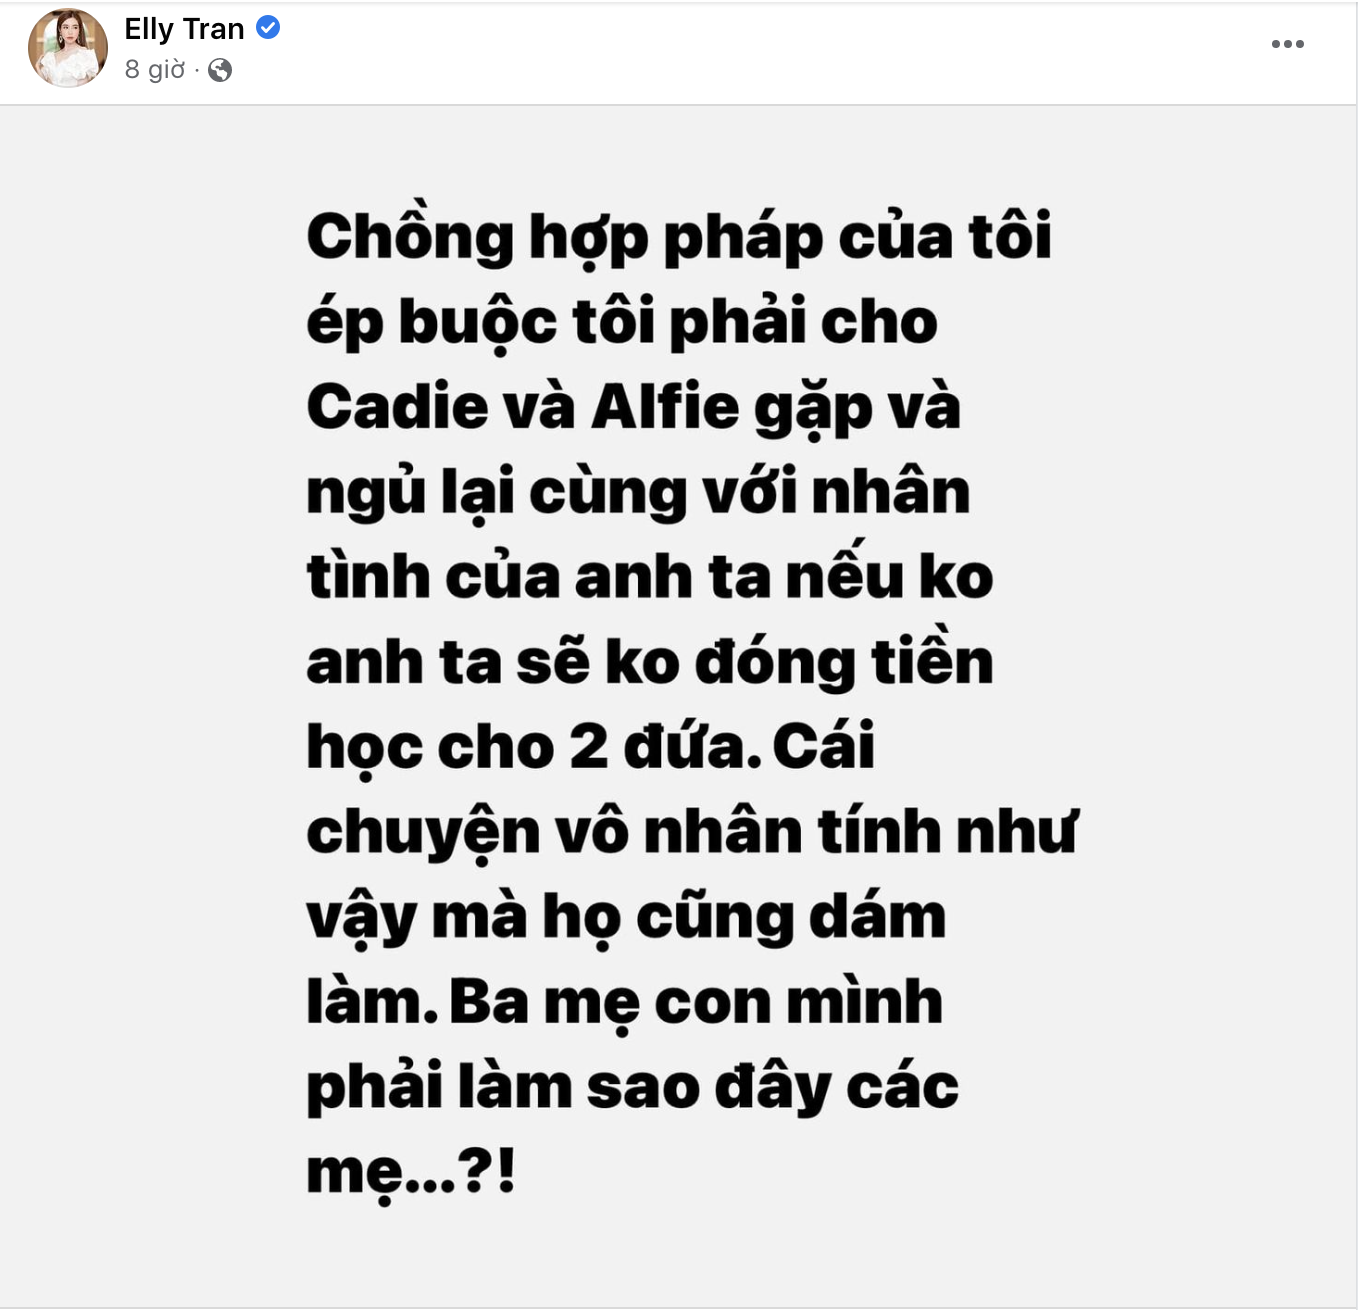 Dòng trạng thái trên tài khoản Facebook của Elly Trần